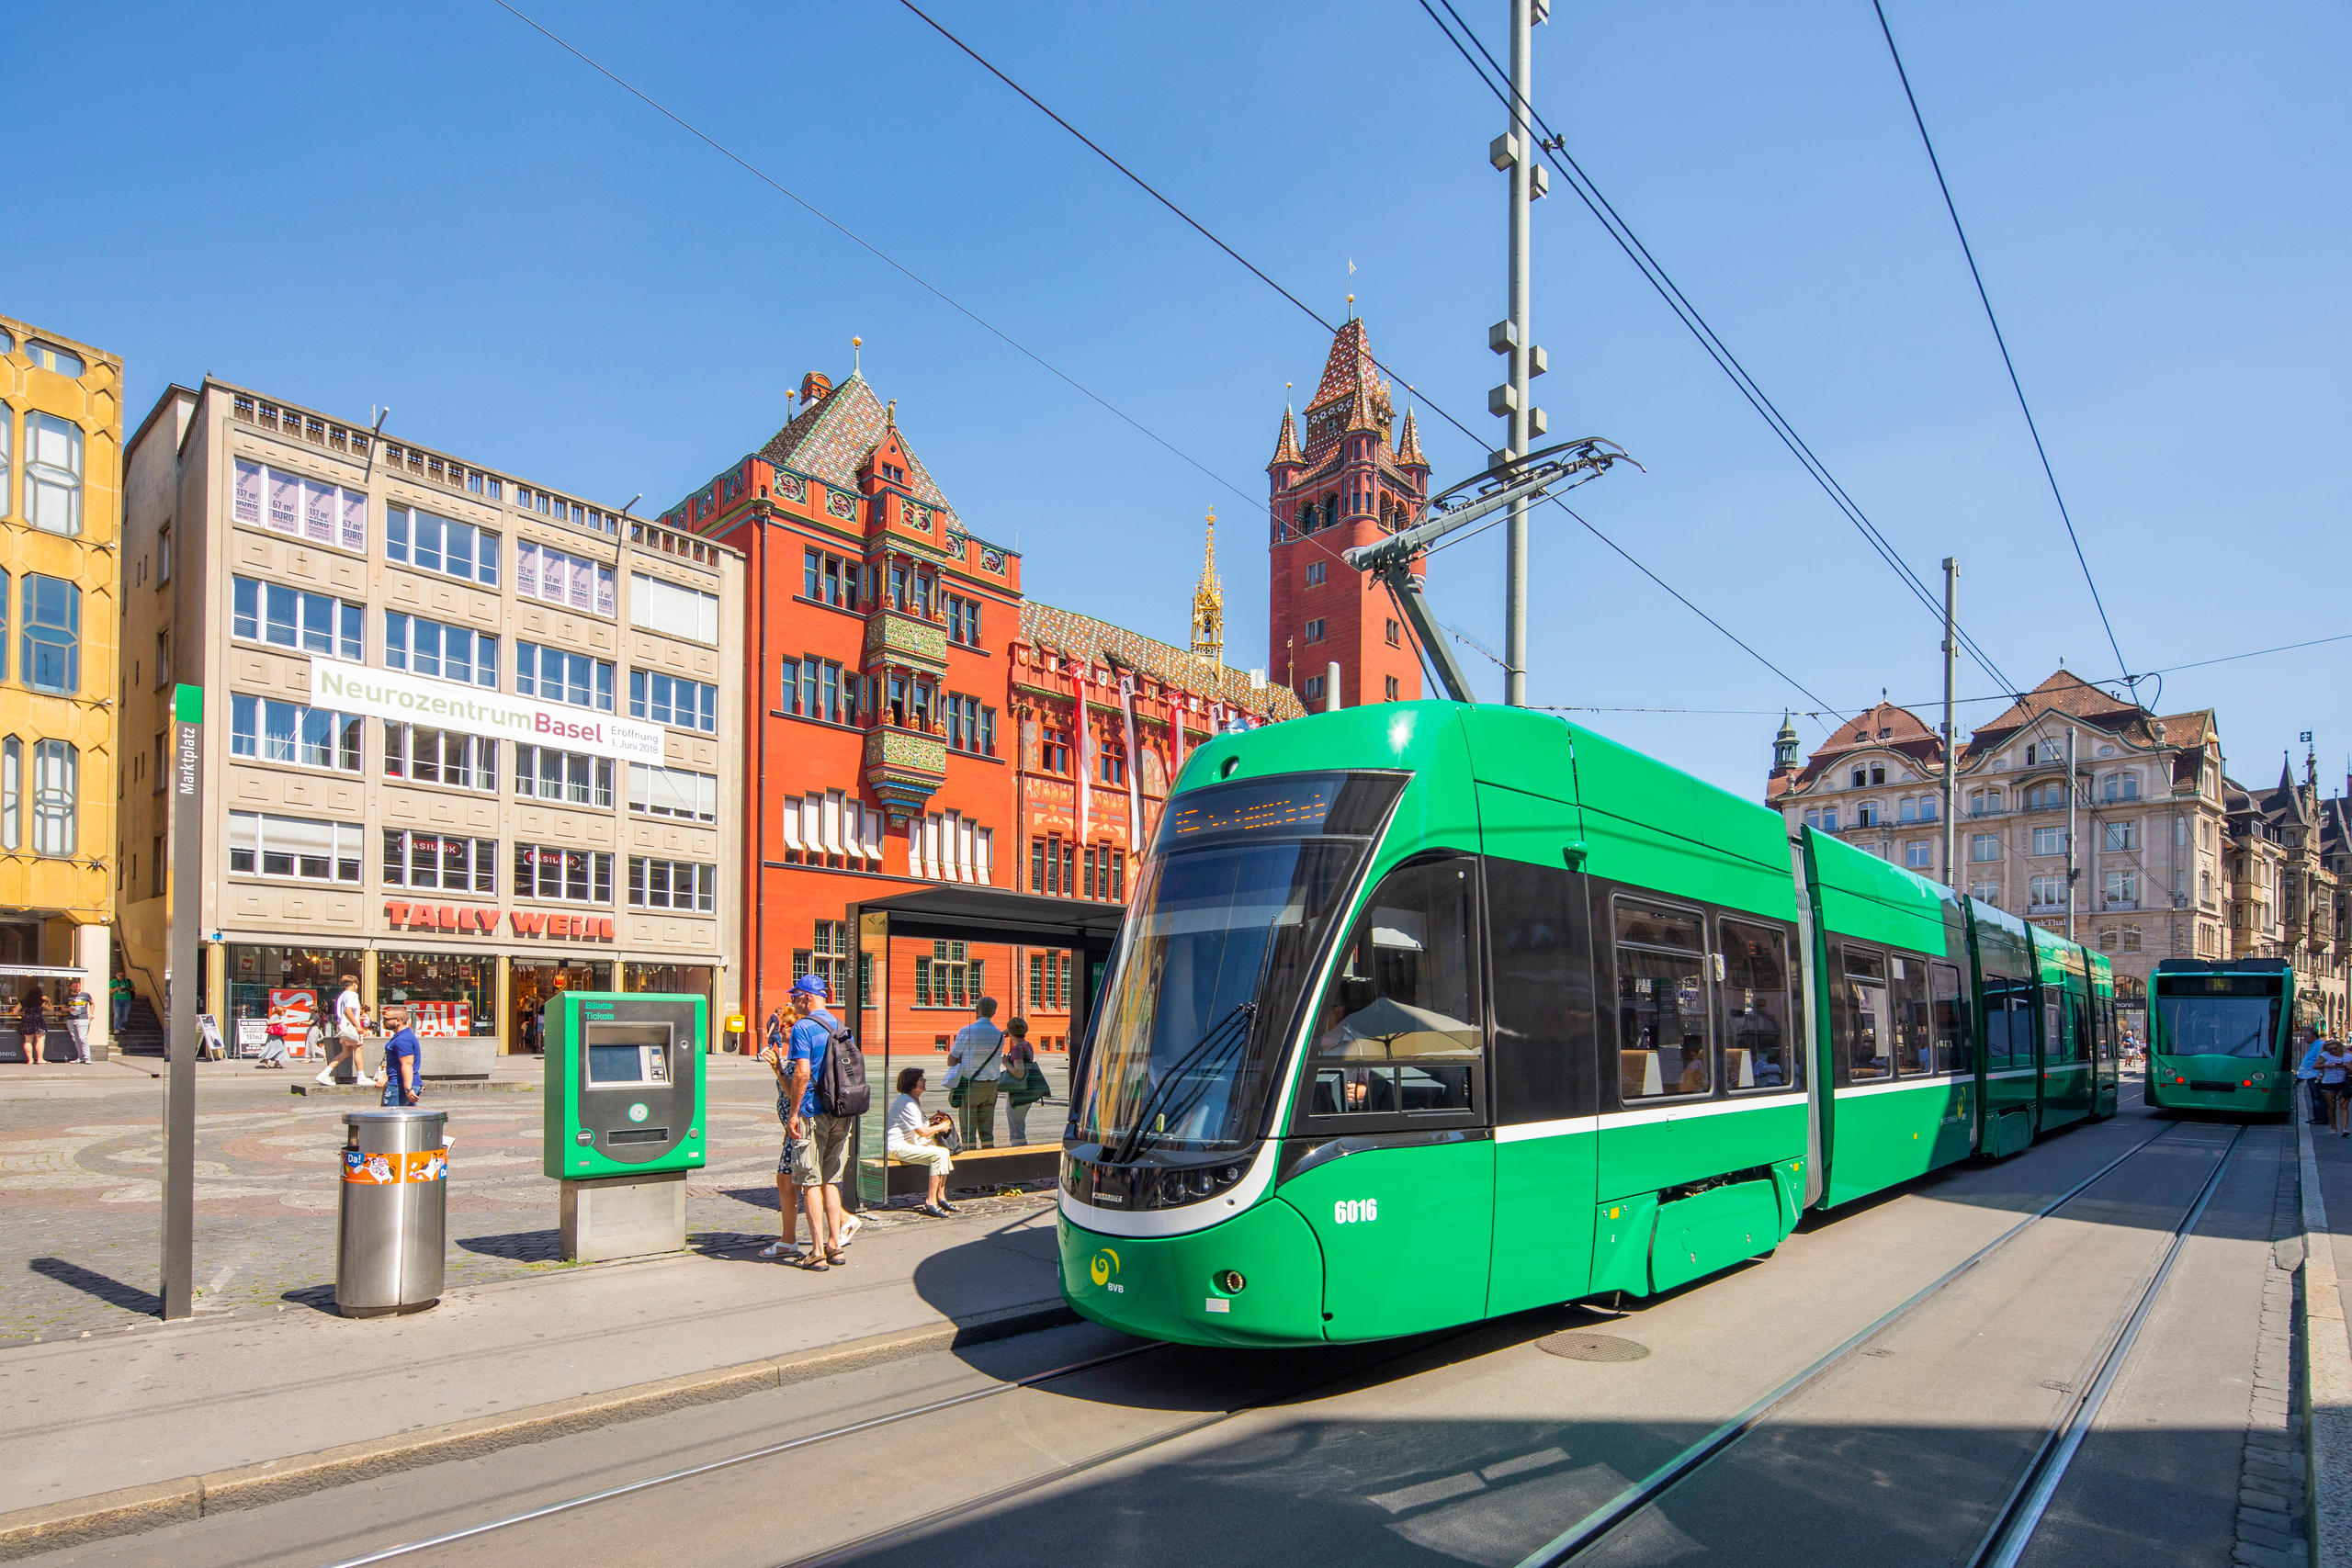 A tram in Basel